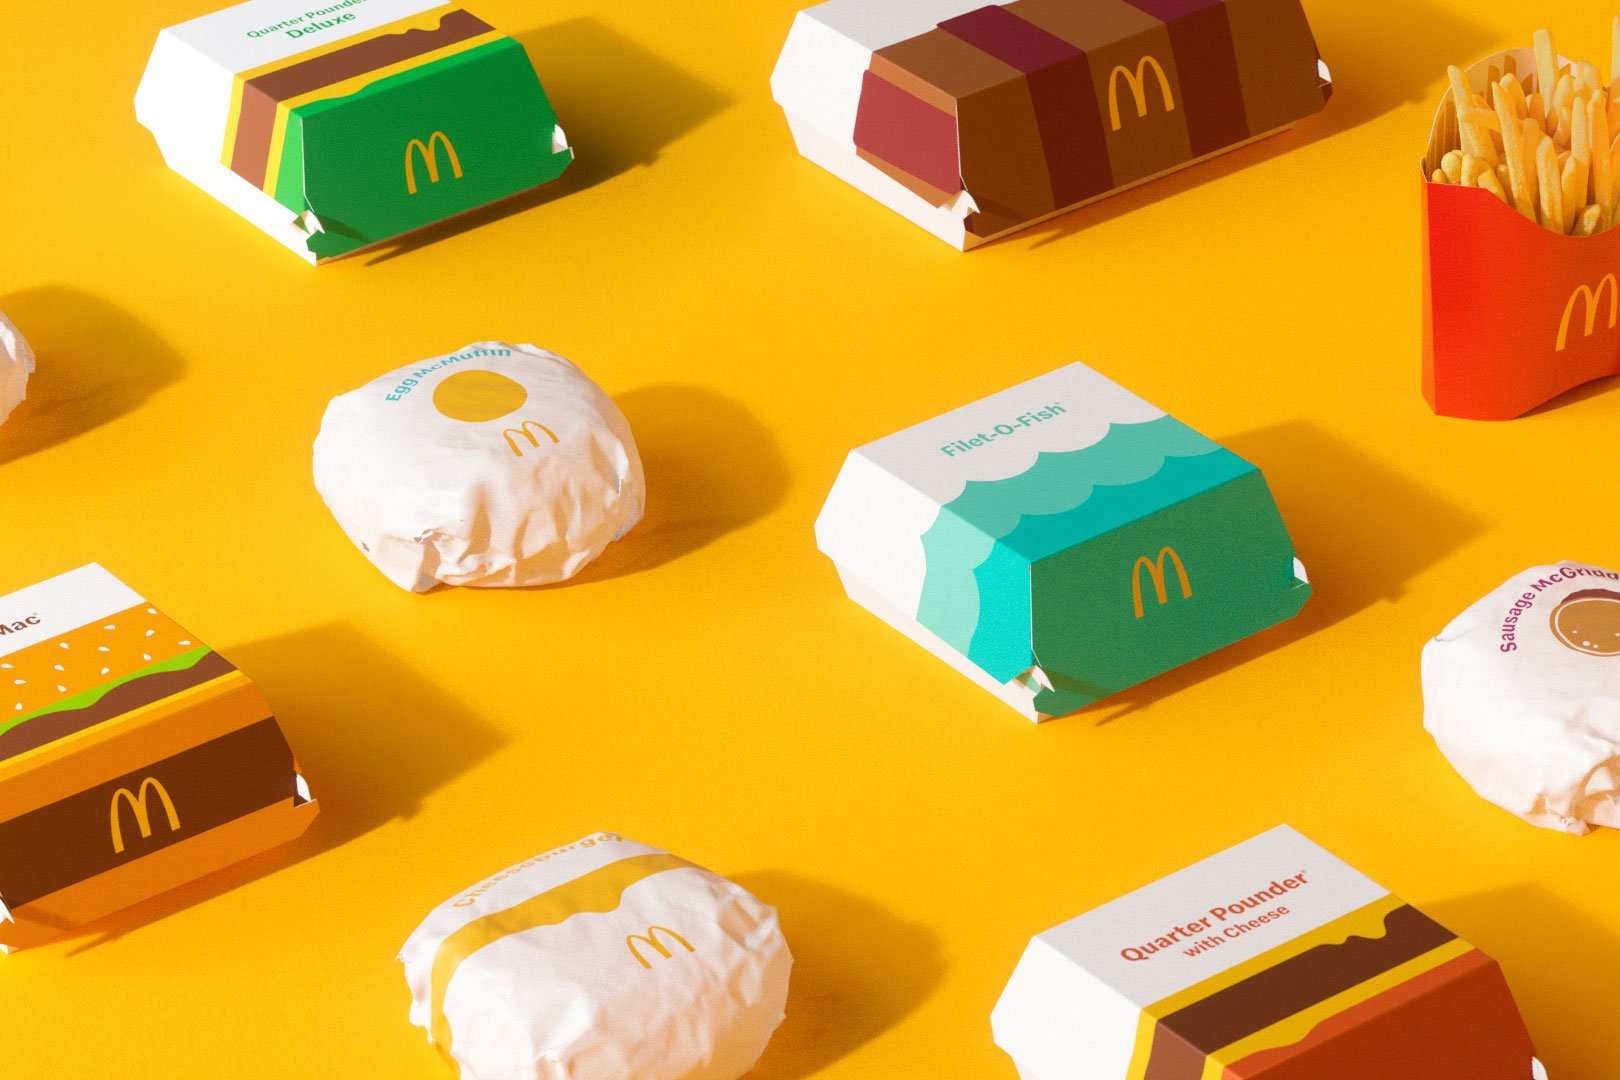 麦当劳包装设计分析图片